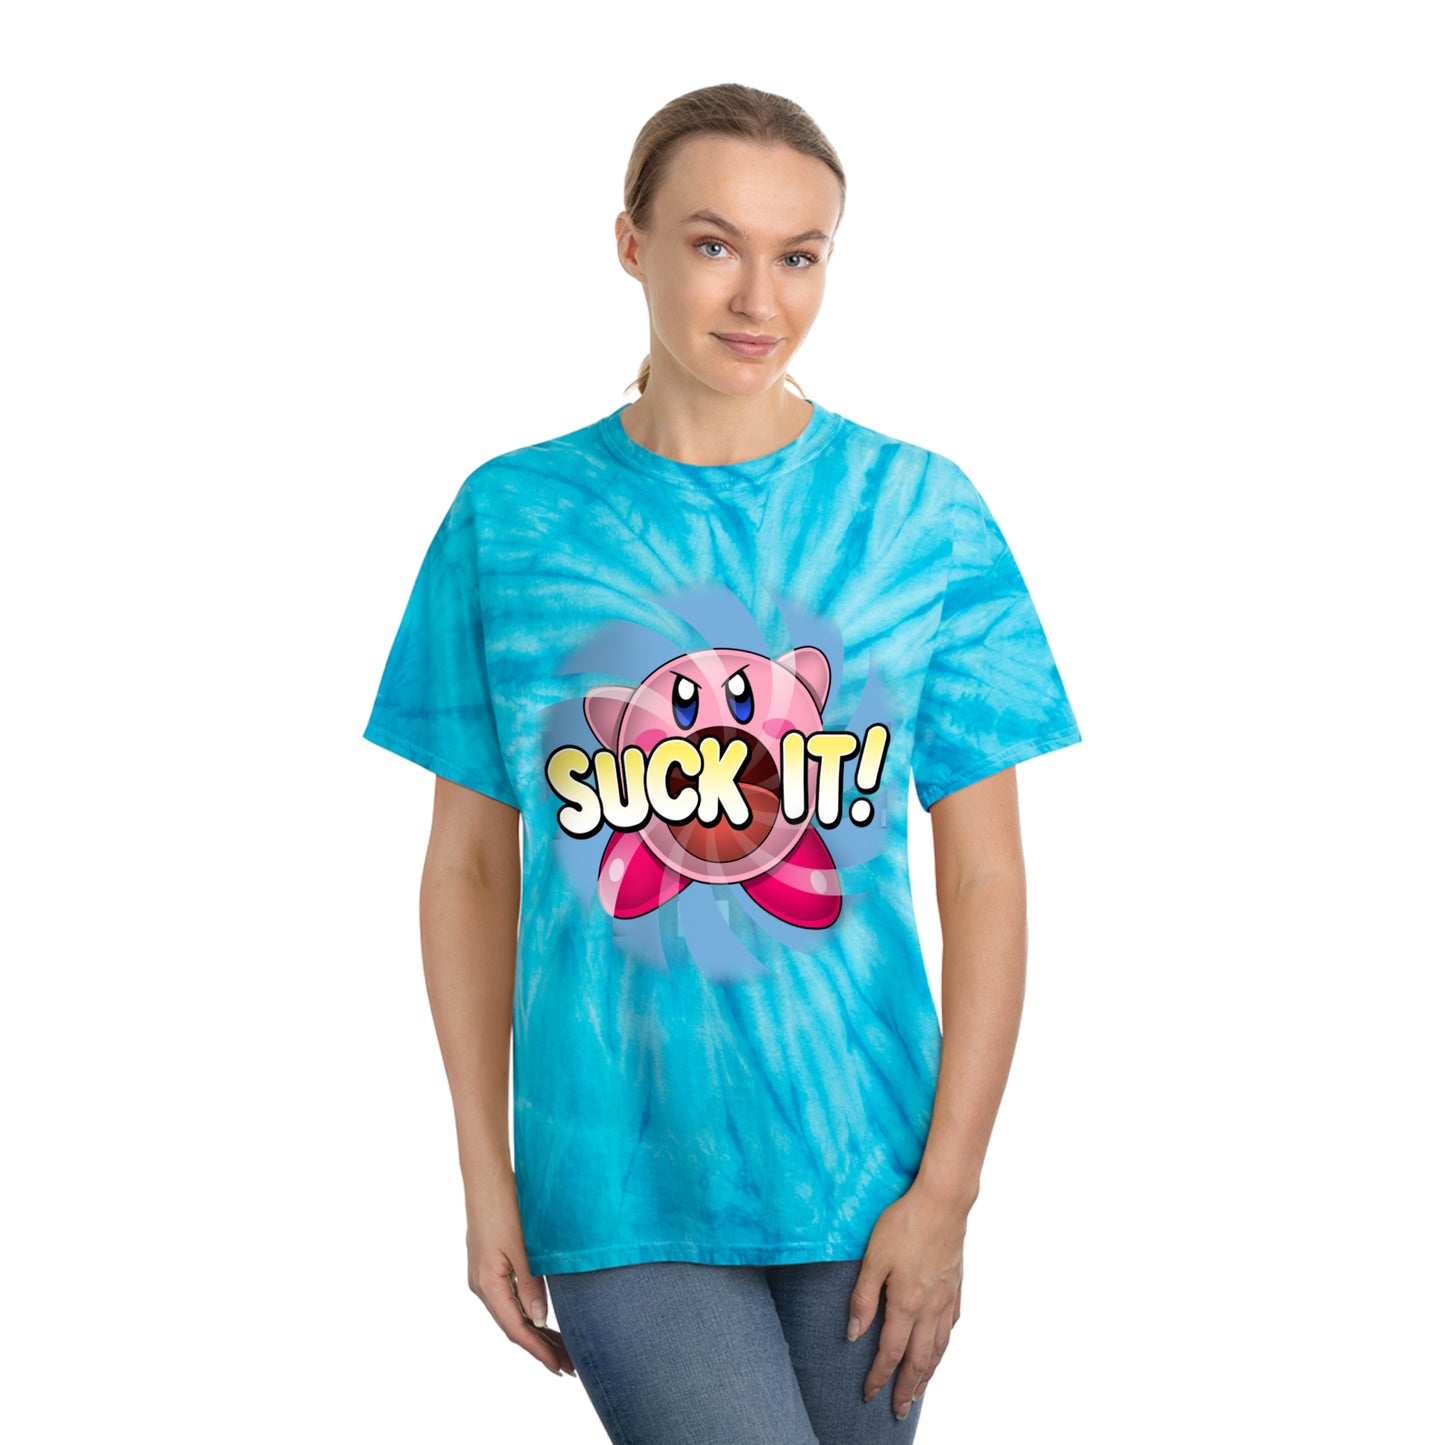 Suck It! tie-dye t-shirt